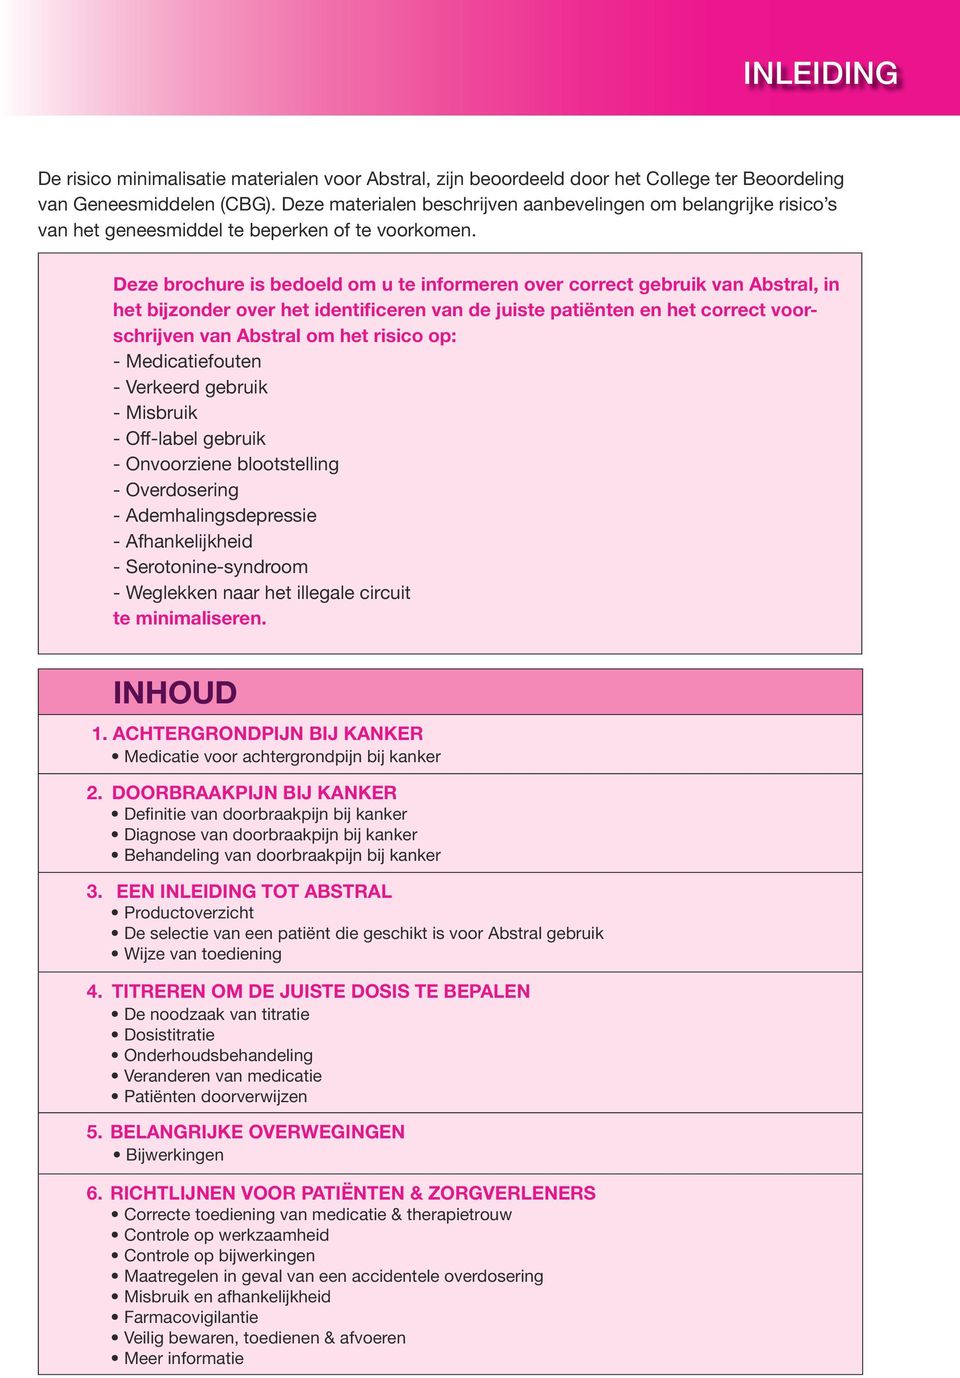 Deze brochure is bedoeld om u te informeren over correct gebruik van Abstral, in het bijzonder over het identificeren van de juiste patiënten en het correct voorschrijven van Abstral om het risico